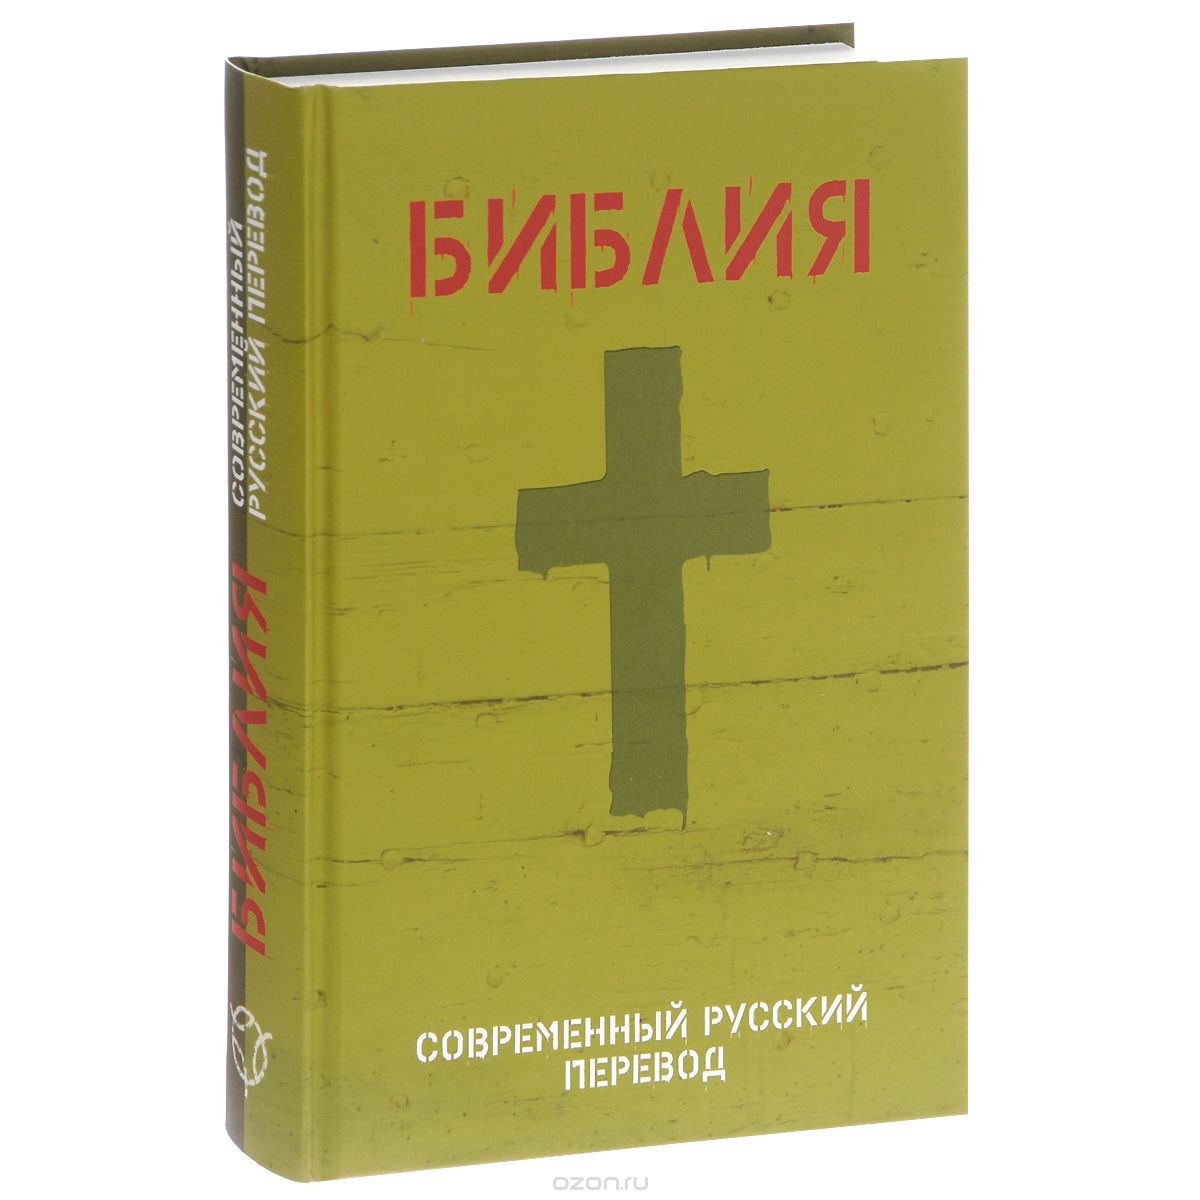 Скачать книгу "Библия. Современный русский перевод"